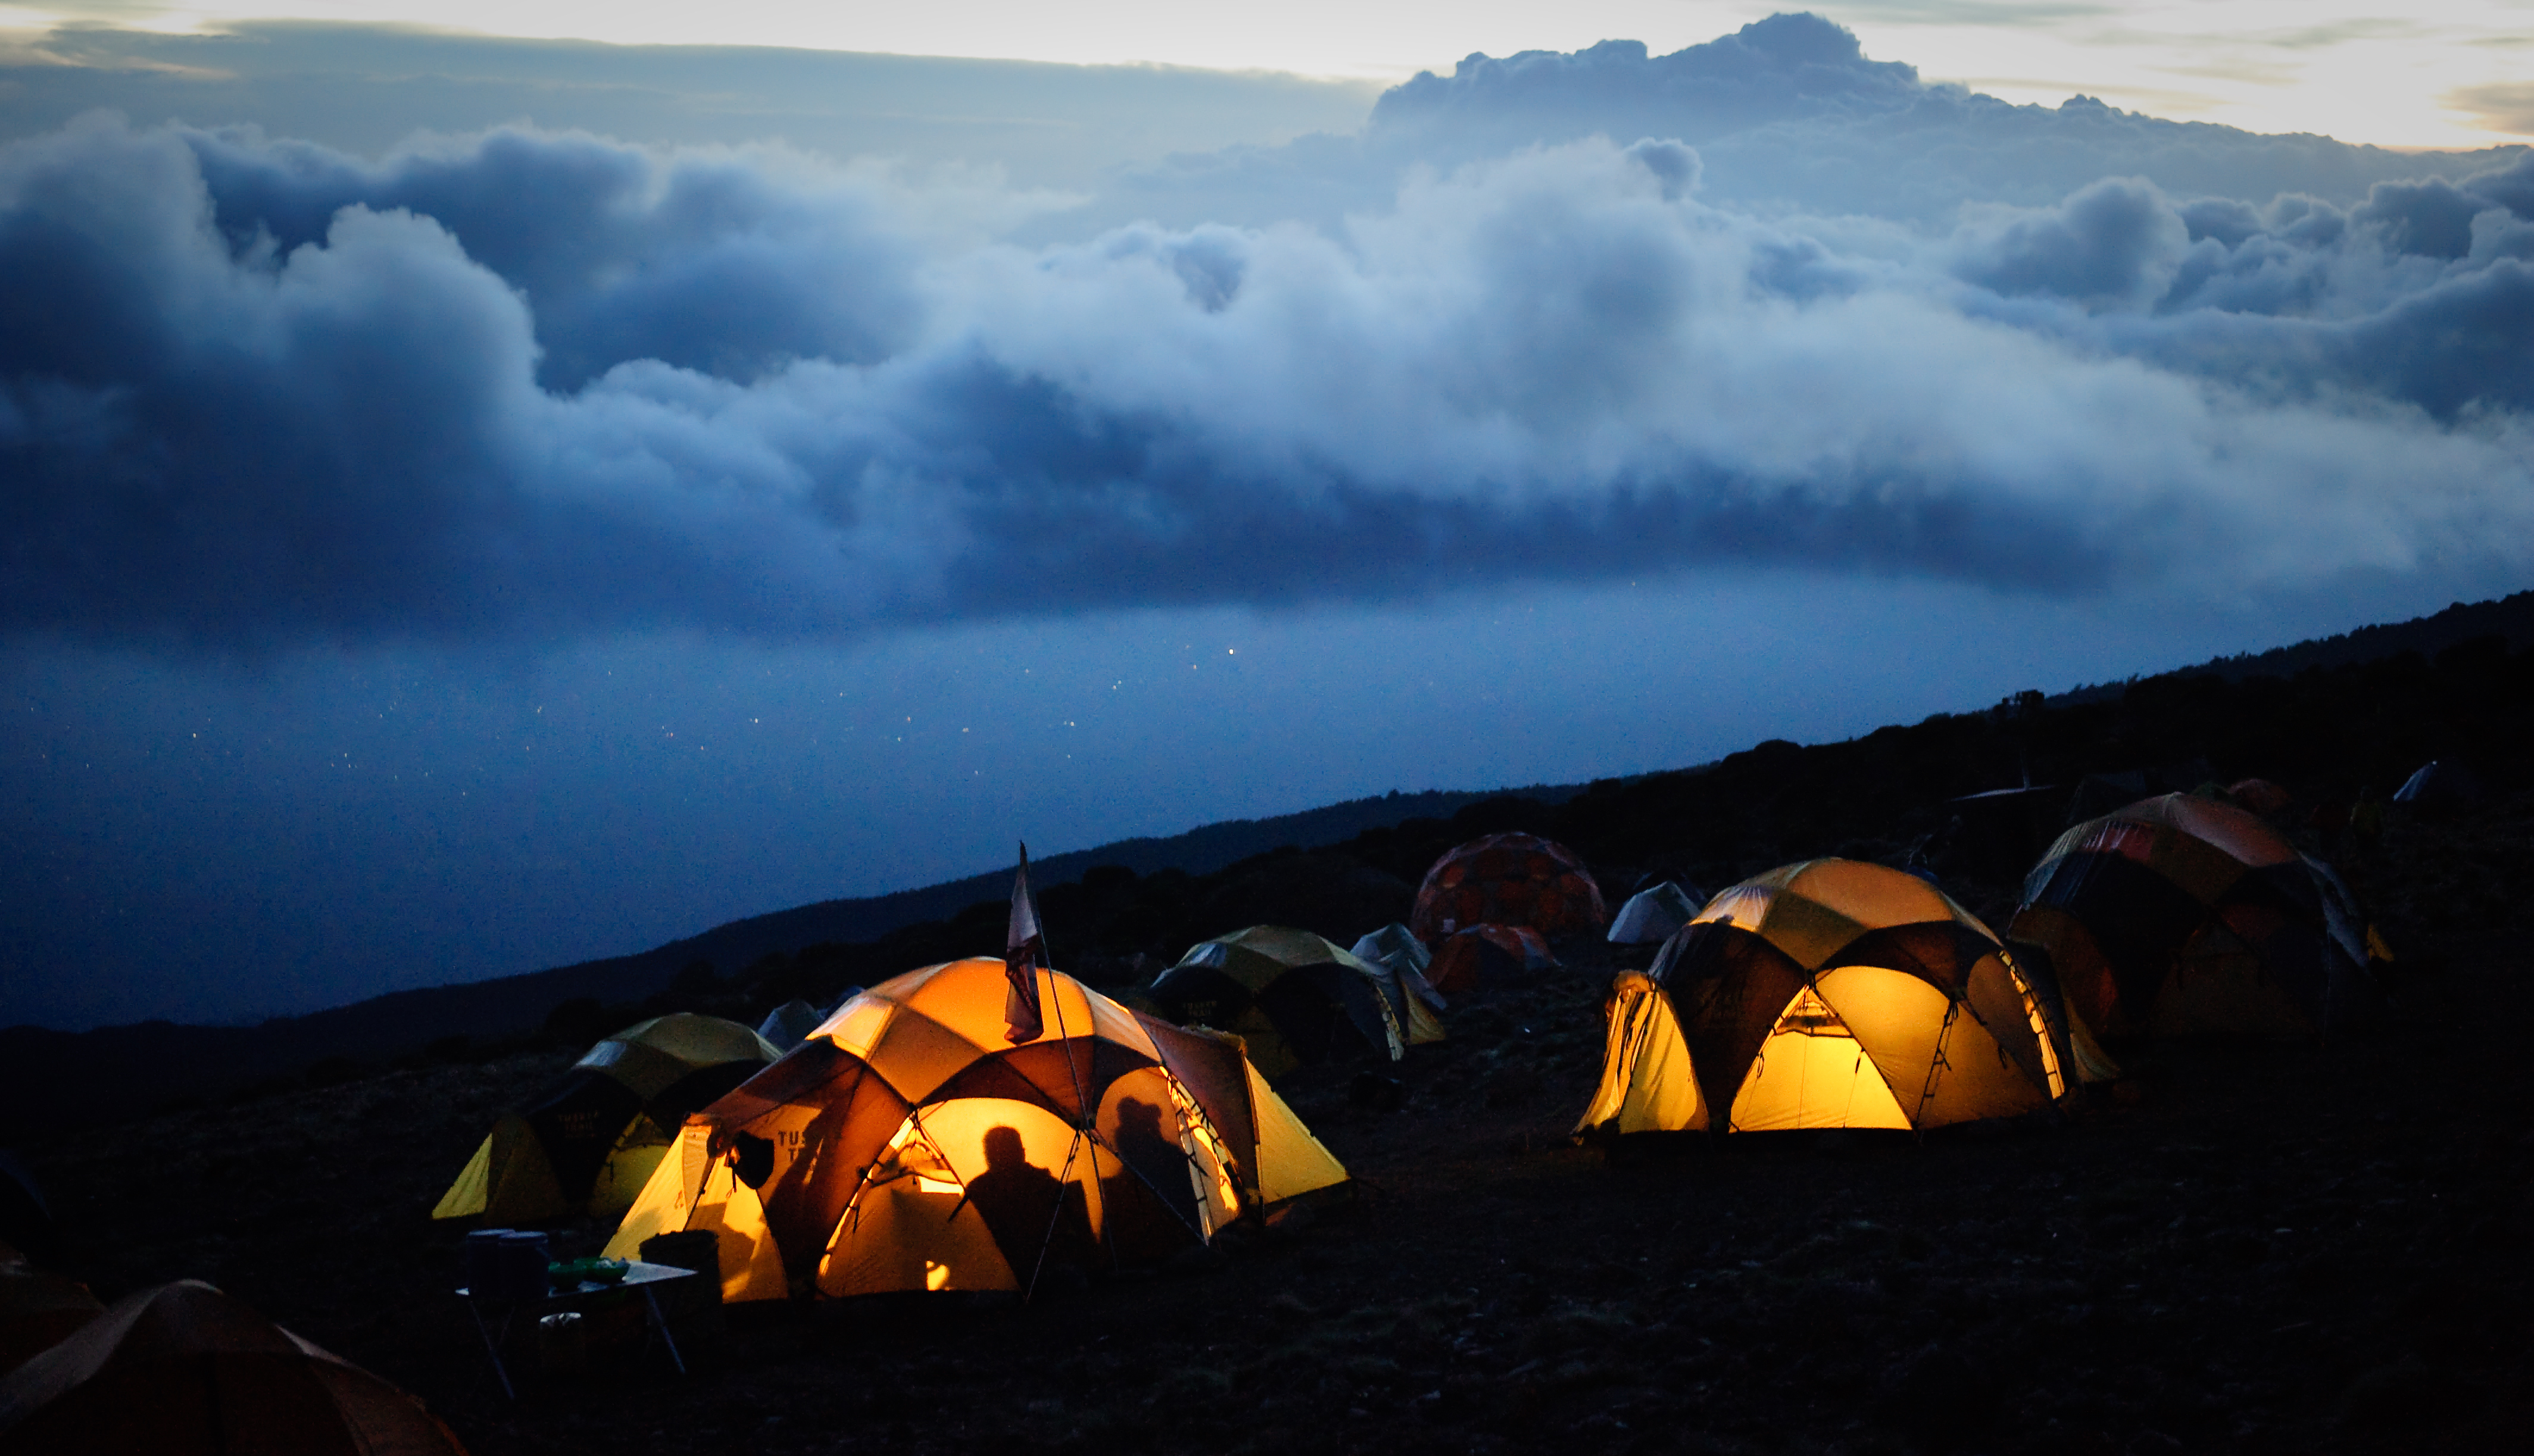 Para Phil Henderson, la solución debe estar en un esfuerzo global para frenar el cambio climático. Espera que quienes suban al Kilimanjaro ayuden a difundir ese mensaje (Getty Images)